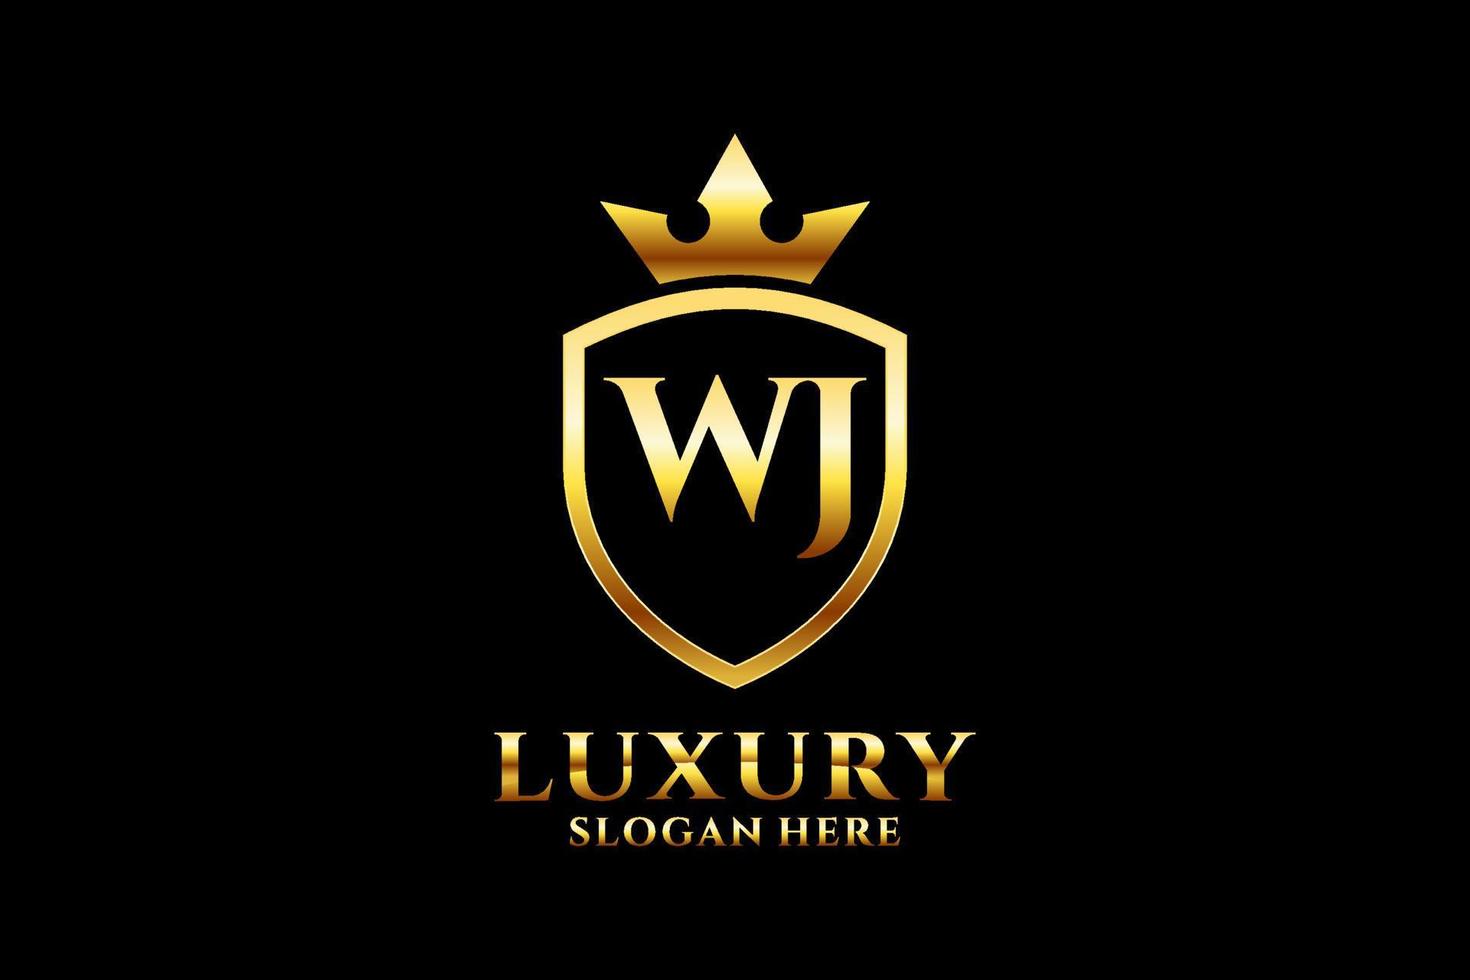 Initial wj elegantes Luxus-Monogramm-Logo oder Abzeichen-Vorlage mit Schriftrollen und Königskrone – perfekt für luxuriöse Branding-Projekte vektor